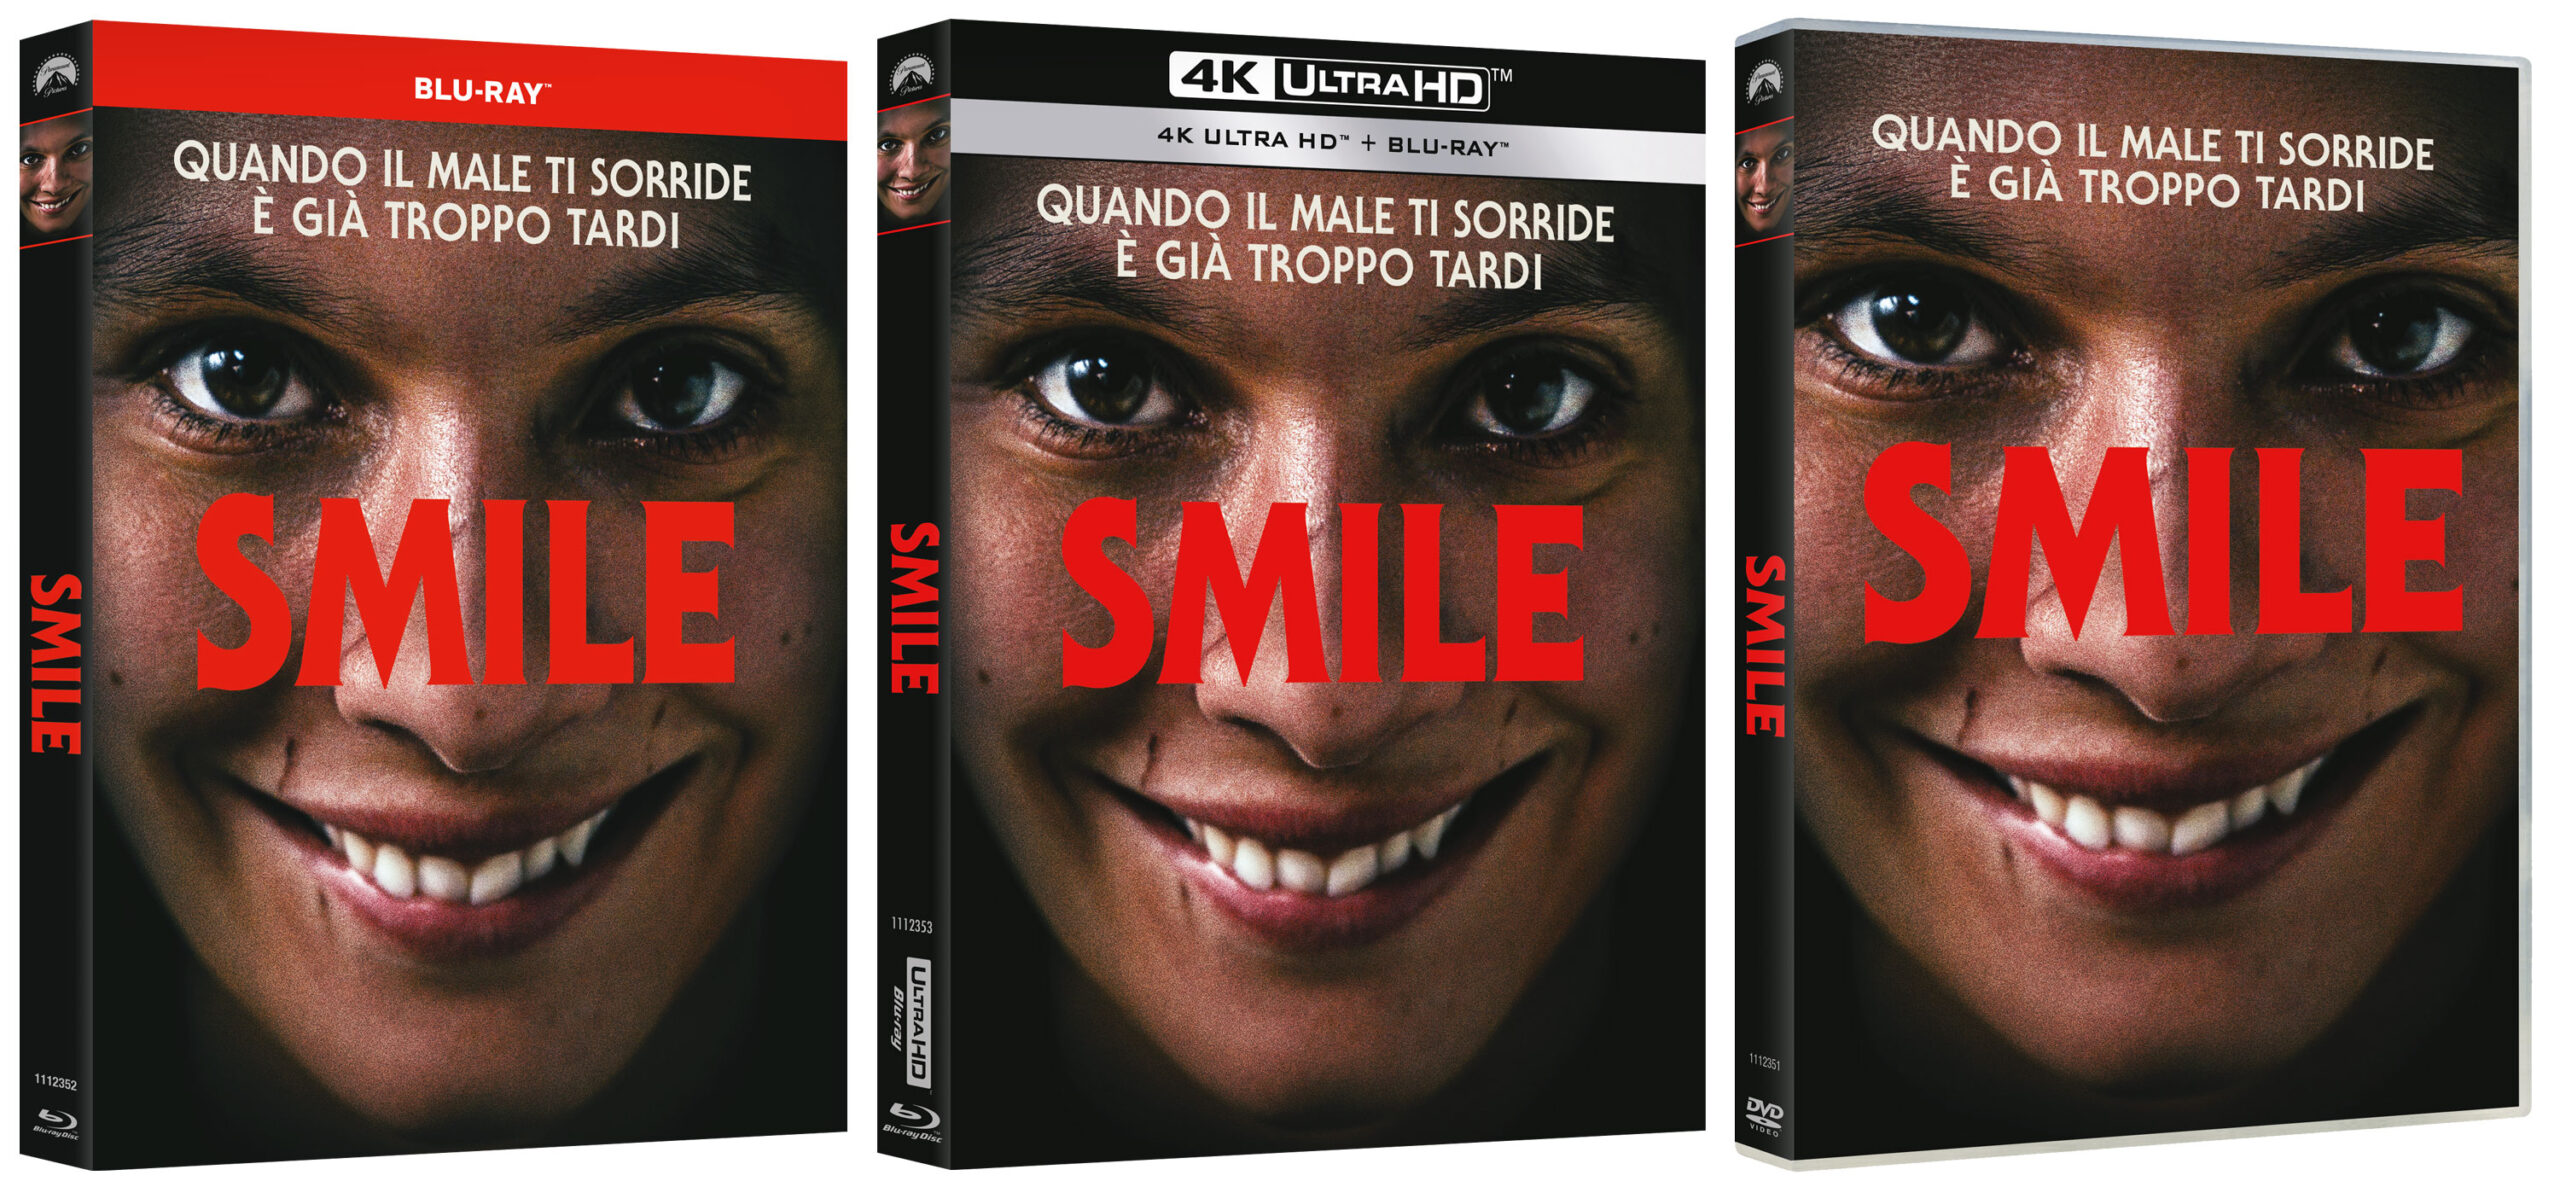 Smile  in DVD, Blu-ray e 4K UHD + Blu-ray